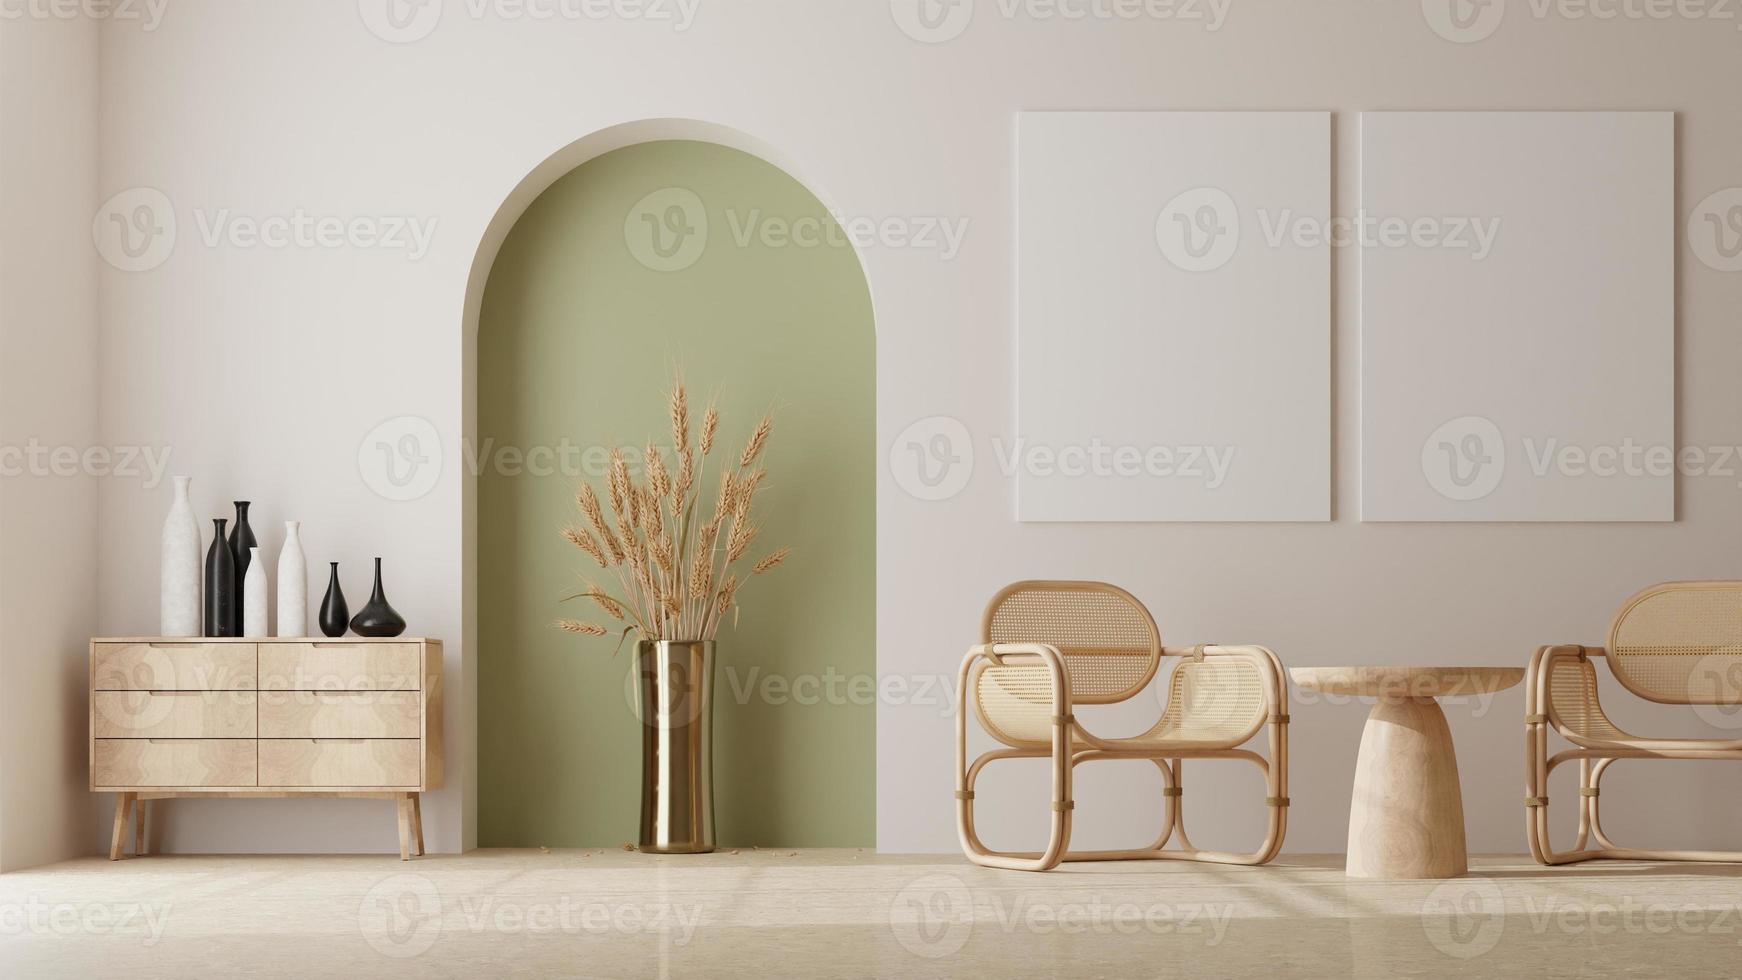 fotoram mockup i rent minimalistiskt skandinaviskt rum. 3d-rendering foto